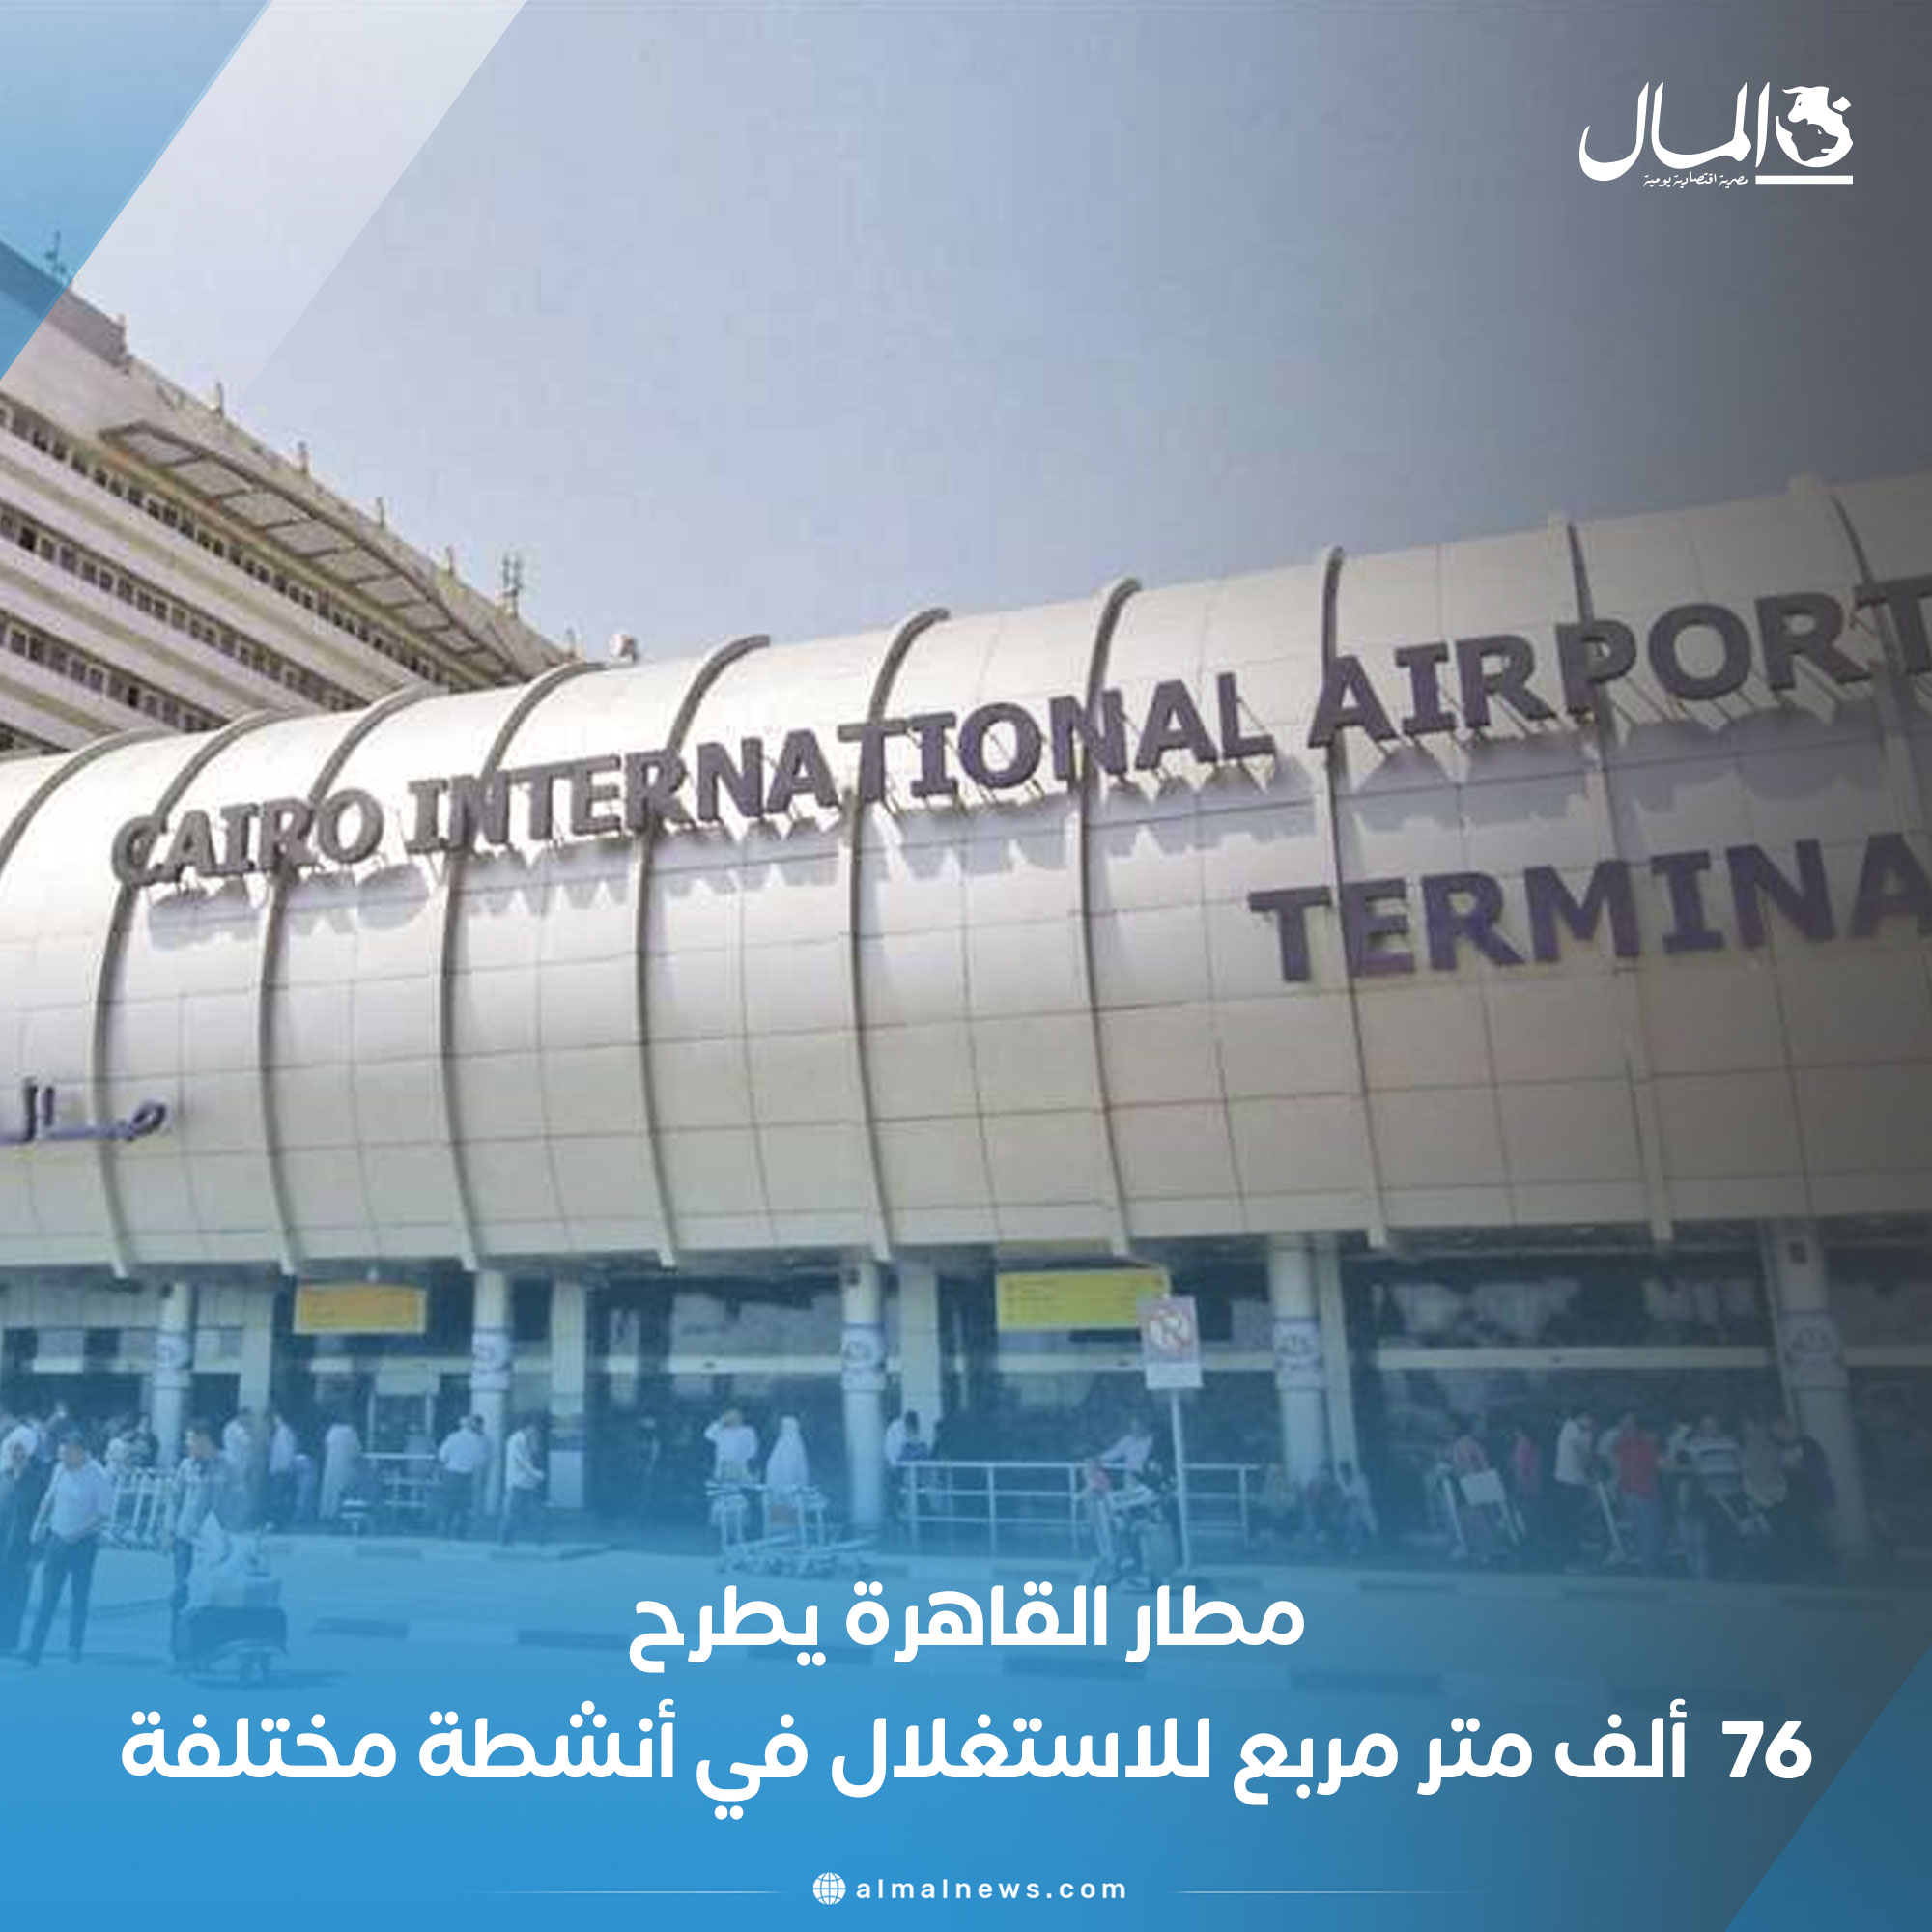 مطار القاهرة يطرح 76 ألف متر مربع للاستغلال في أنشطة مختلفة. للتفاصيل 